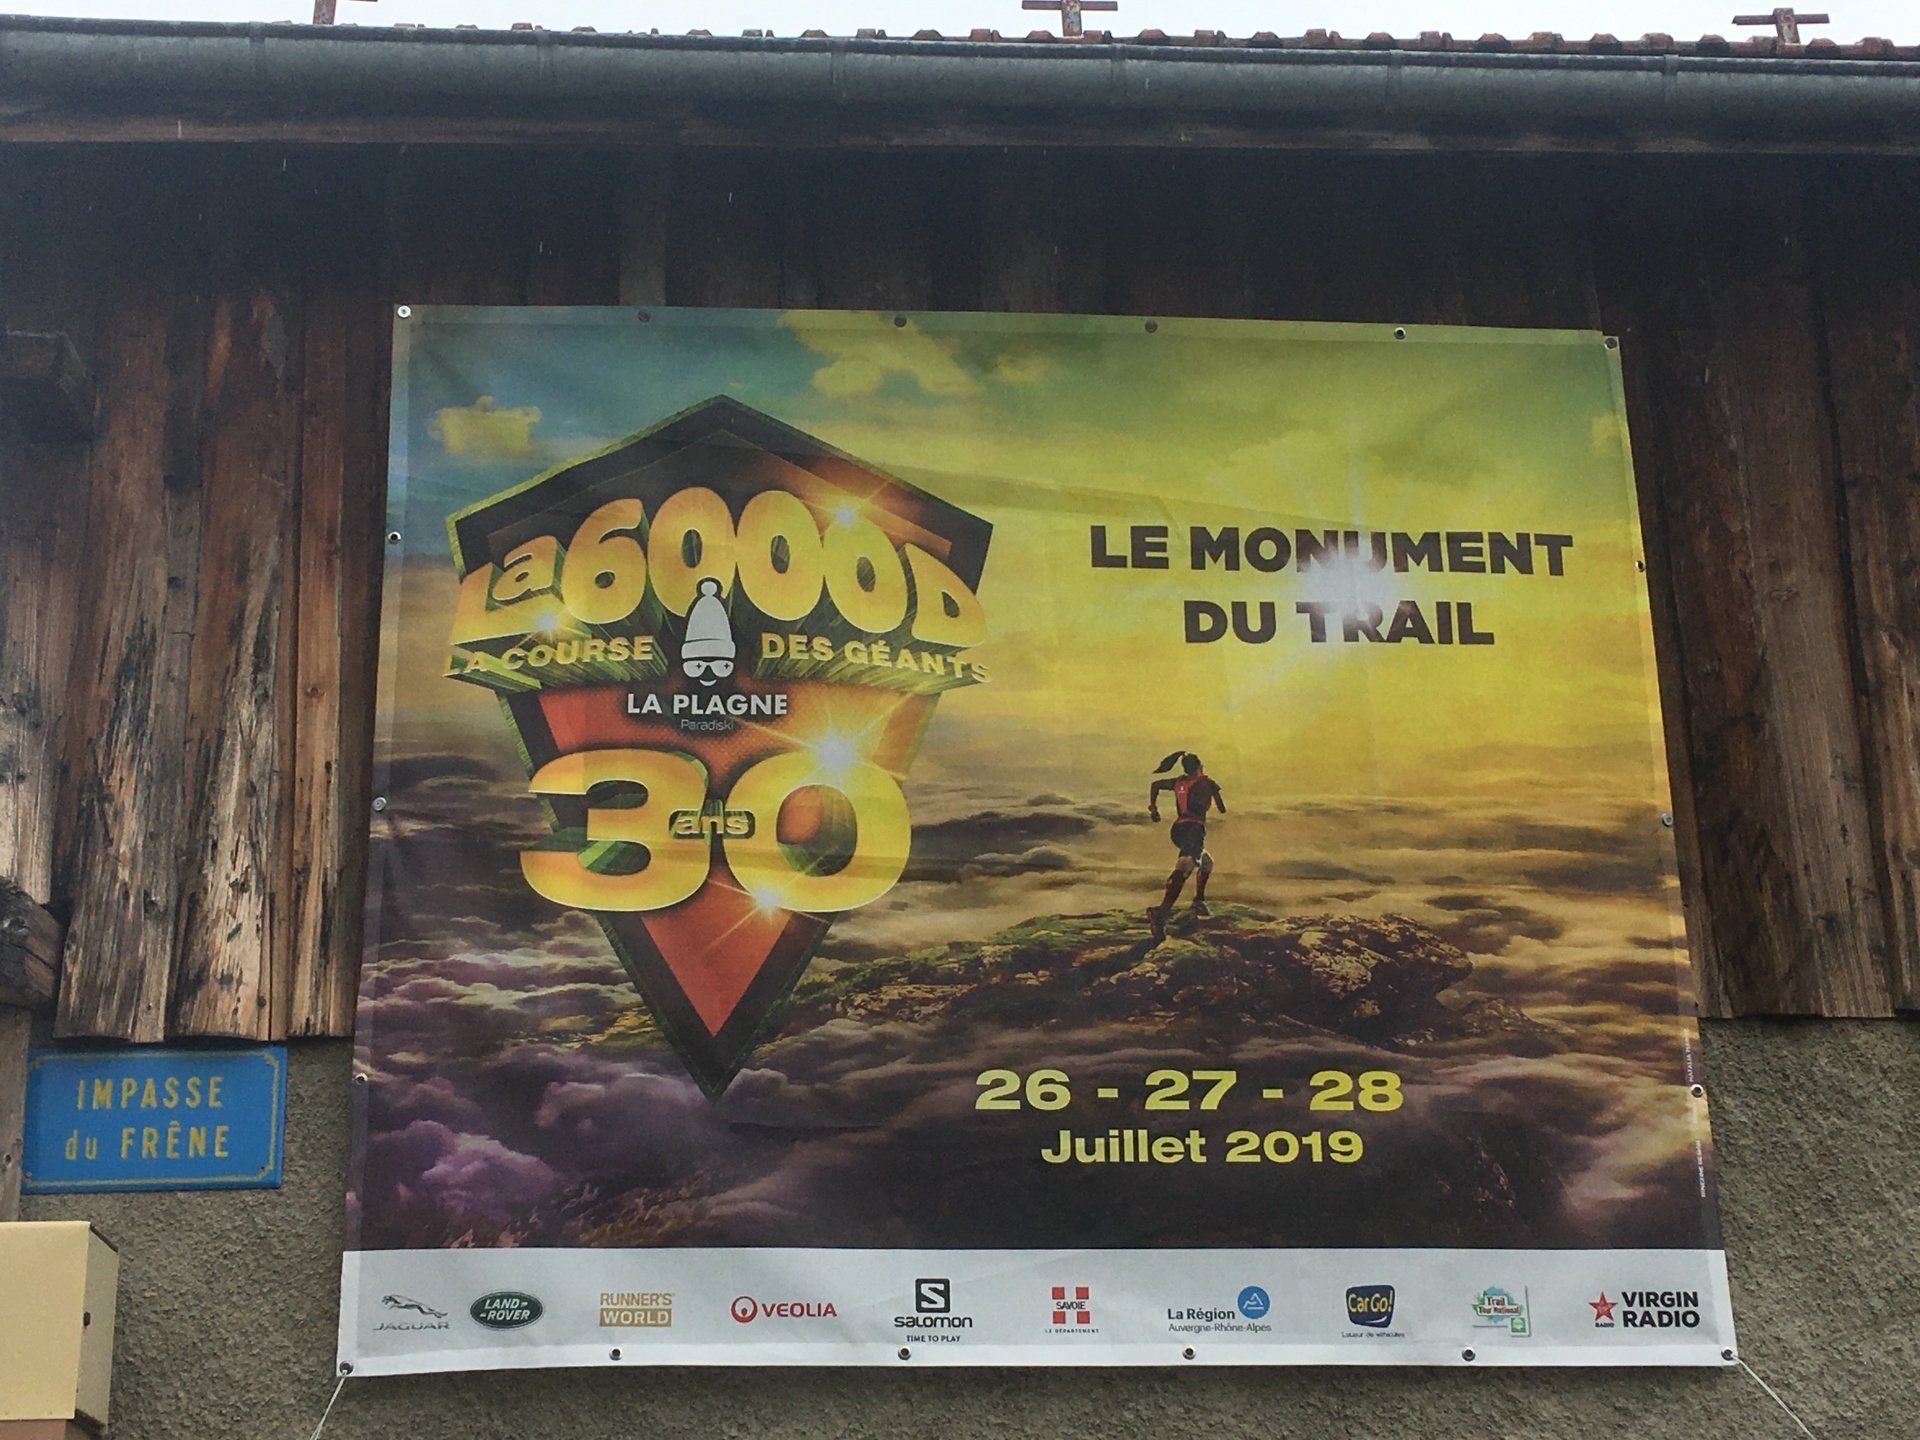 Poster for La6000D La Course des Géants the Annual Endurance Race held in La Plagne